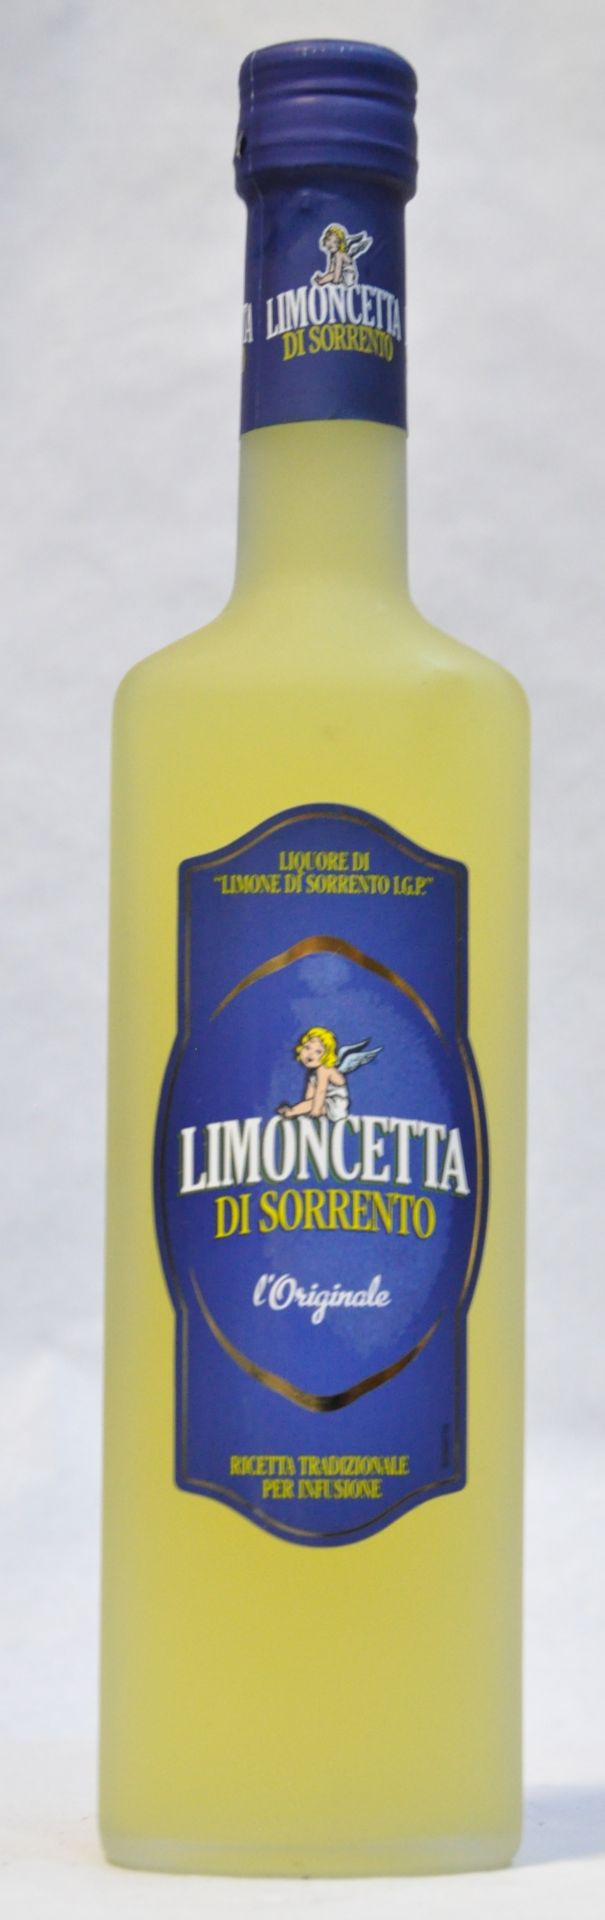 1 x Limoncetta Di Sorrento Italian Liqueur - 50cl Bottle Size - 30% Volume - Ref W1187 - CL101 -